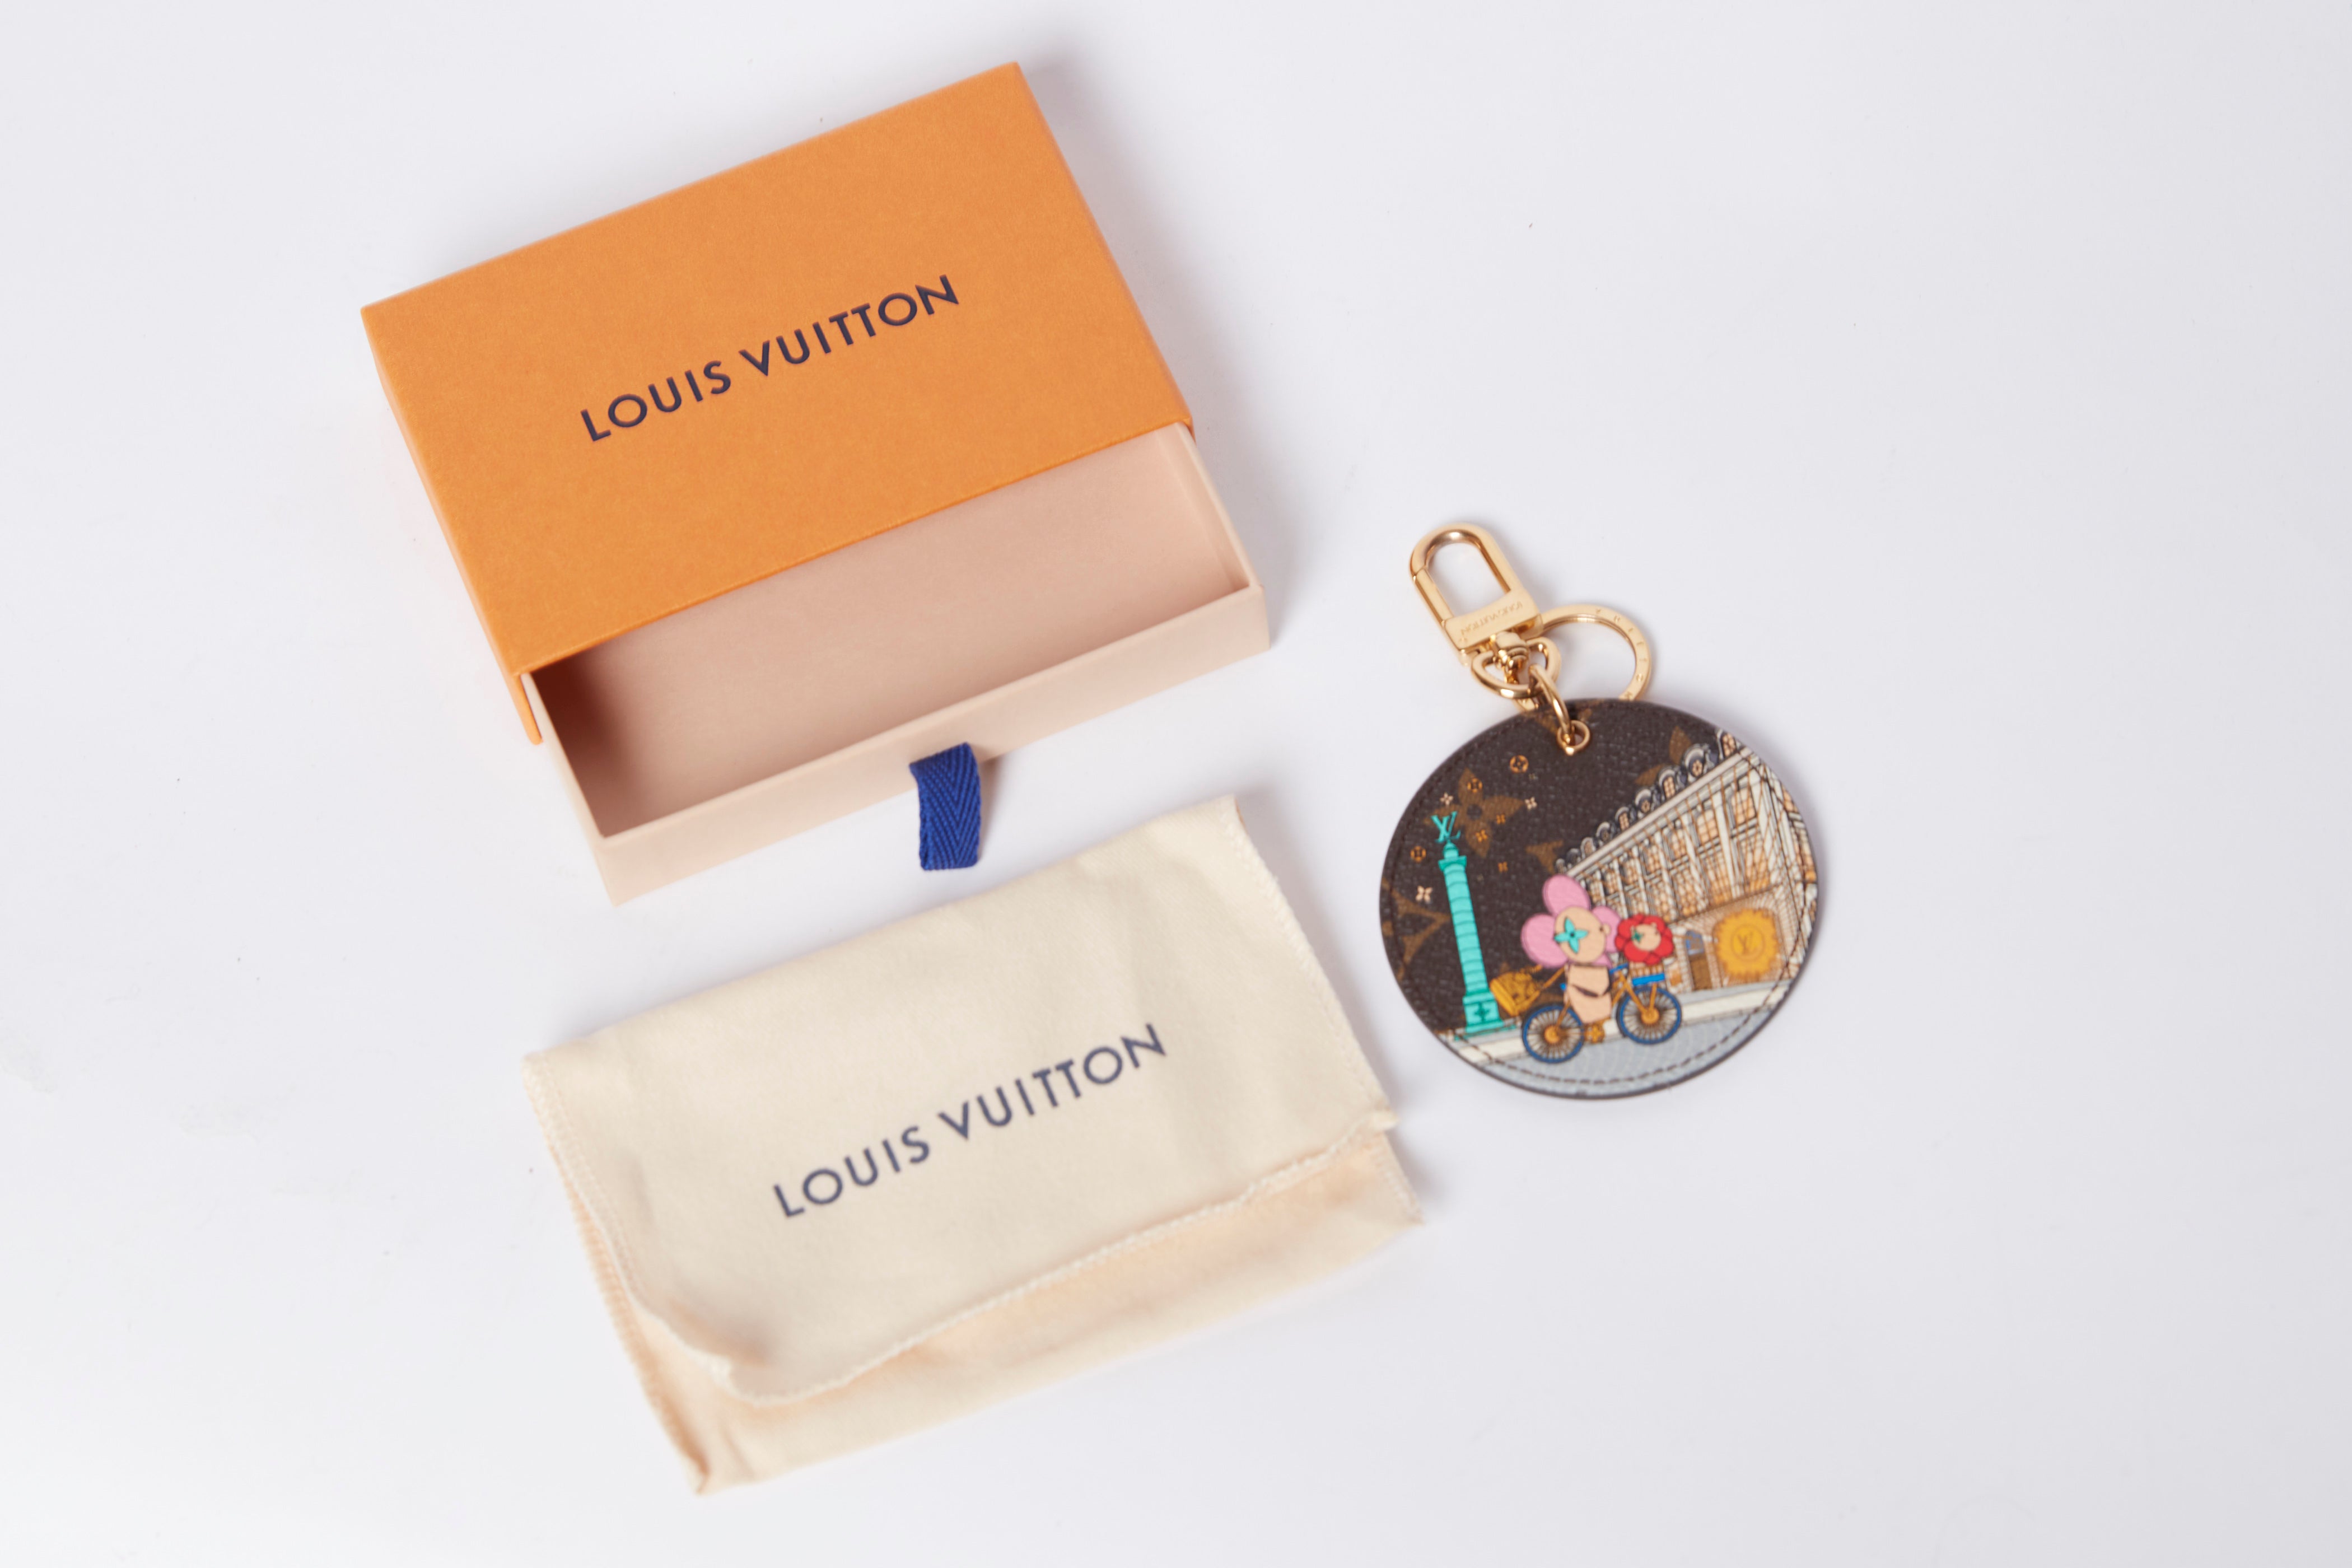 Louis Vuitton ILLUSTRE XMAS PARIS BAG CHARM AND KEY HOLDER M00872